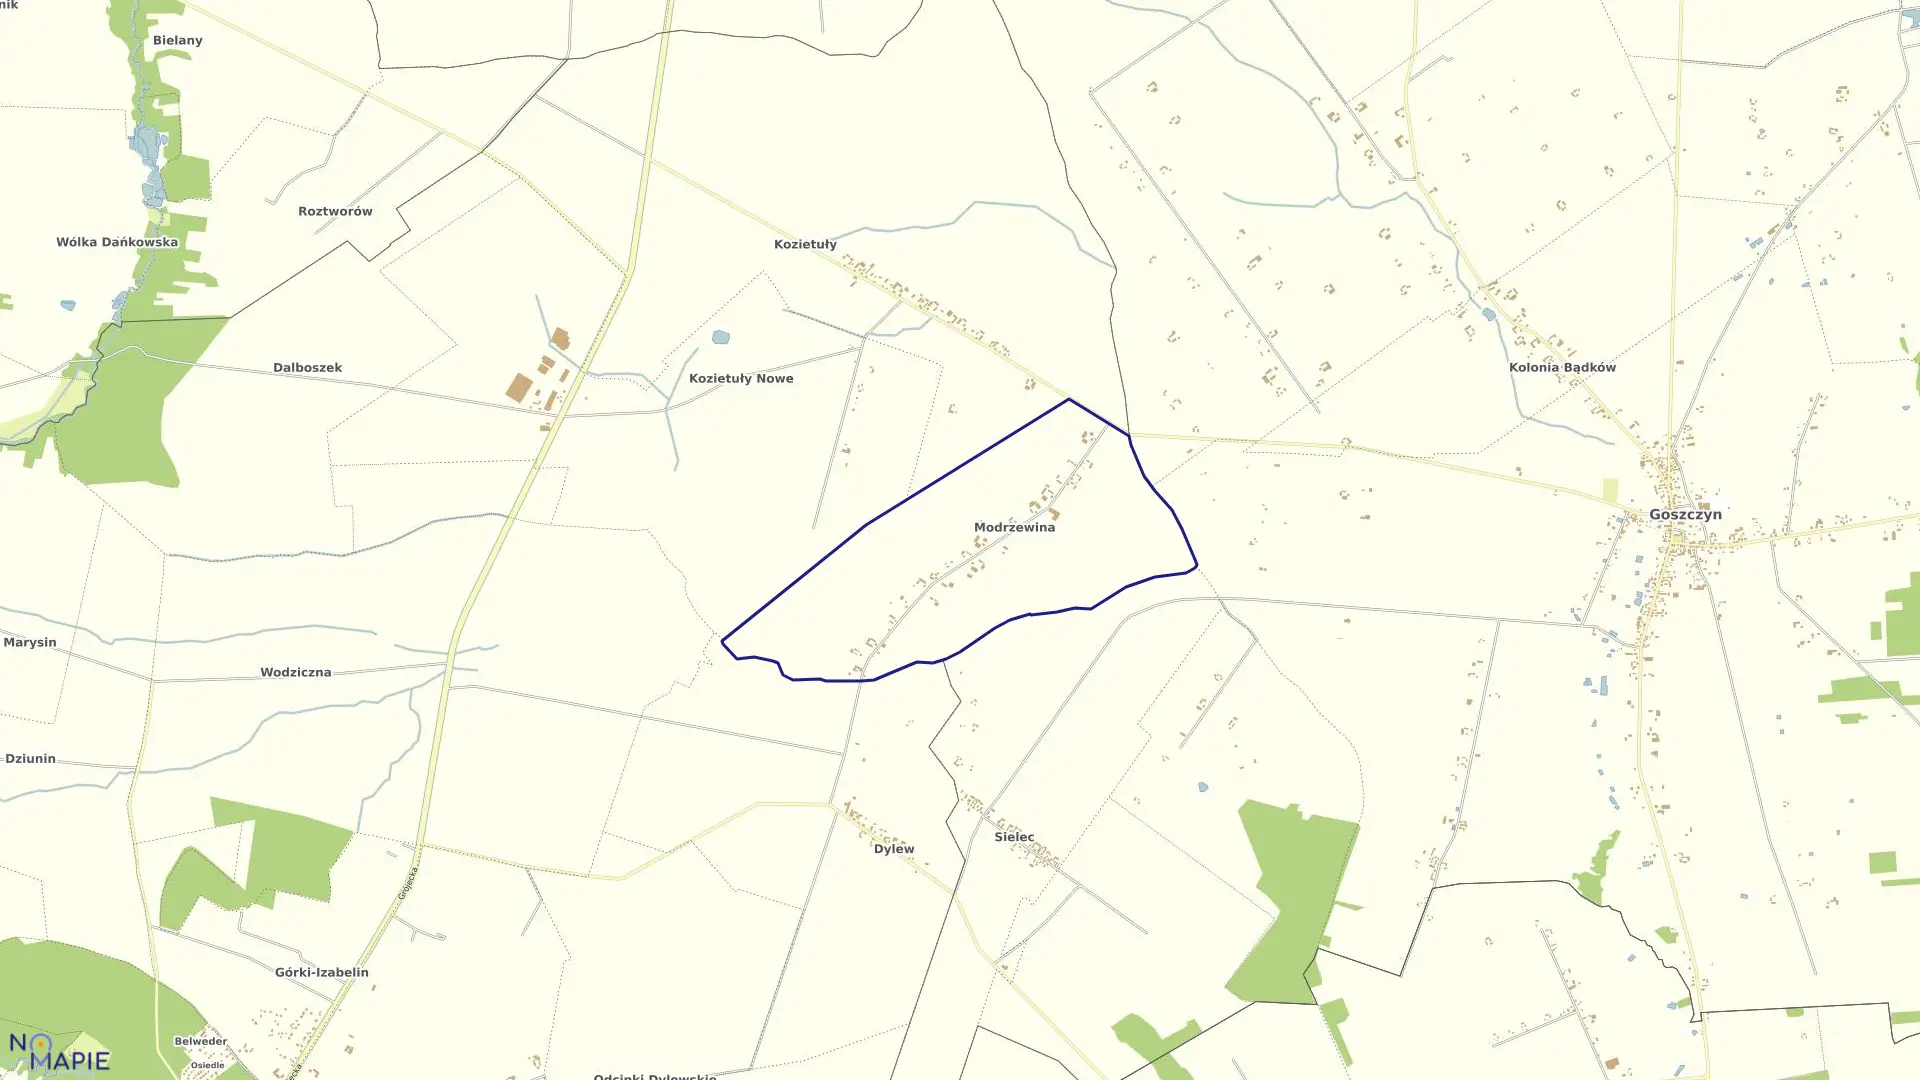 Mapa obrębu MODRZEWINA w gminie Goszczyn